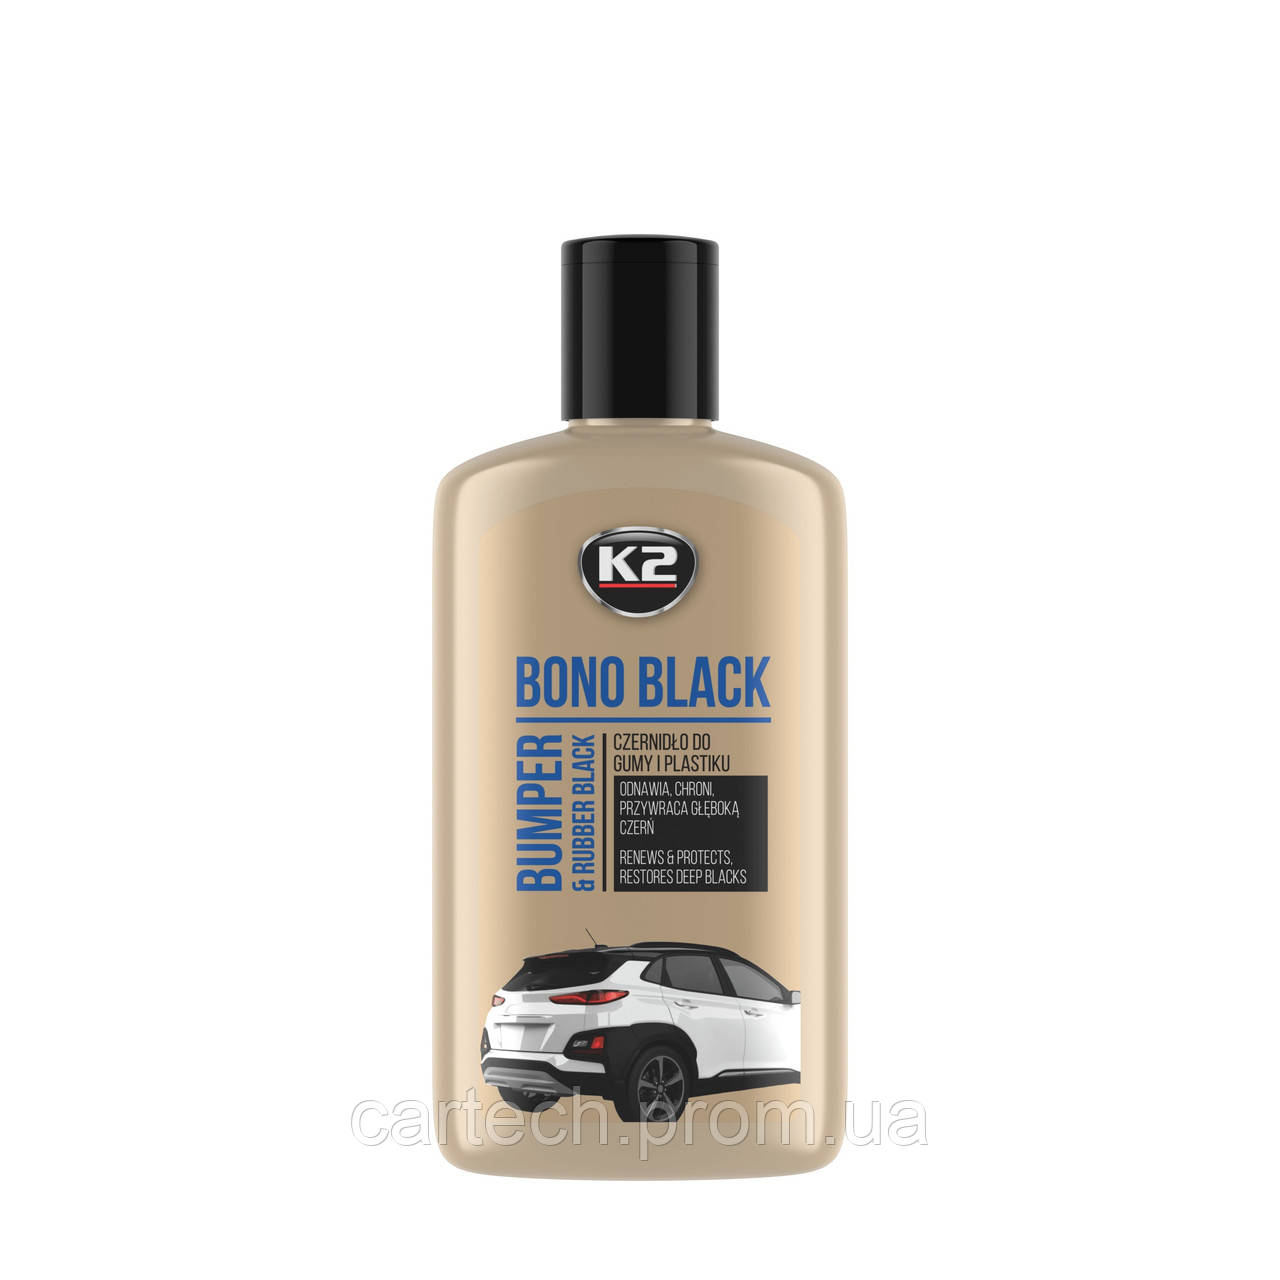 Засіб для чорніння шин і бамперів K2 Bono Black 250 мл — (K030N)